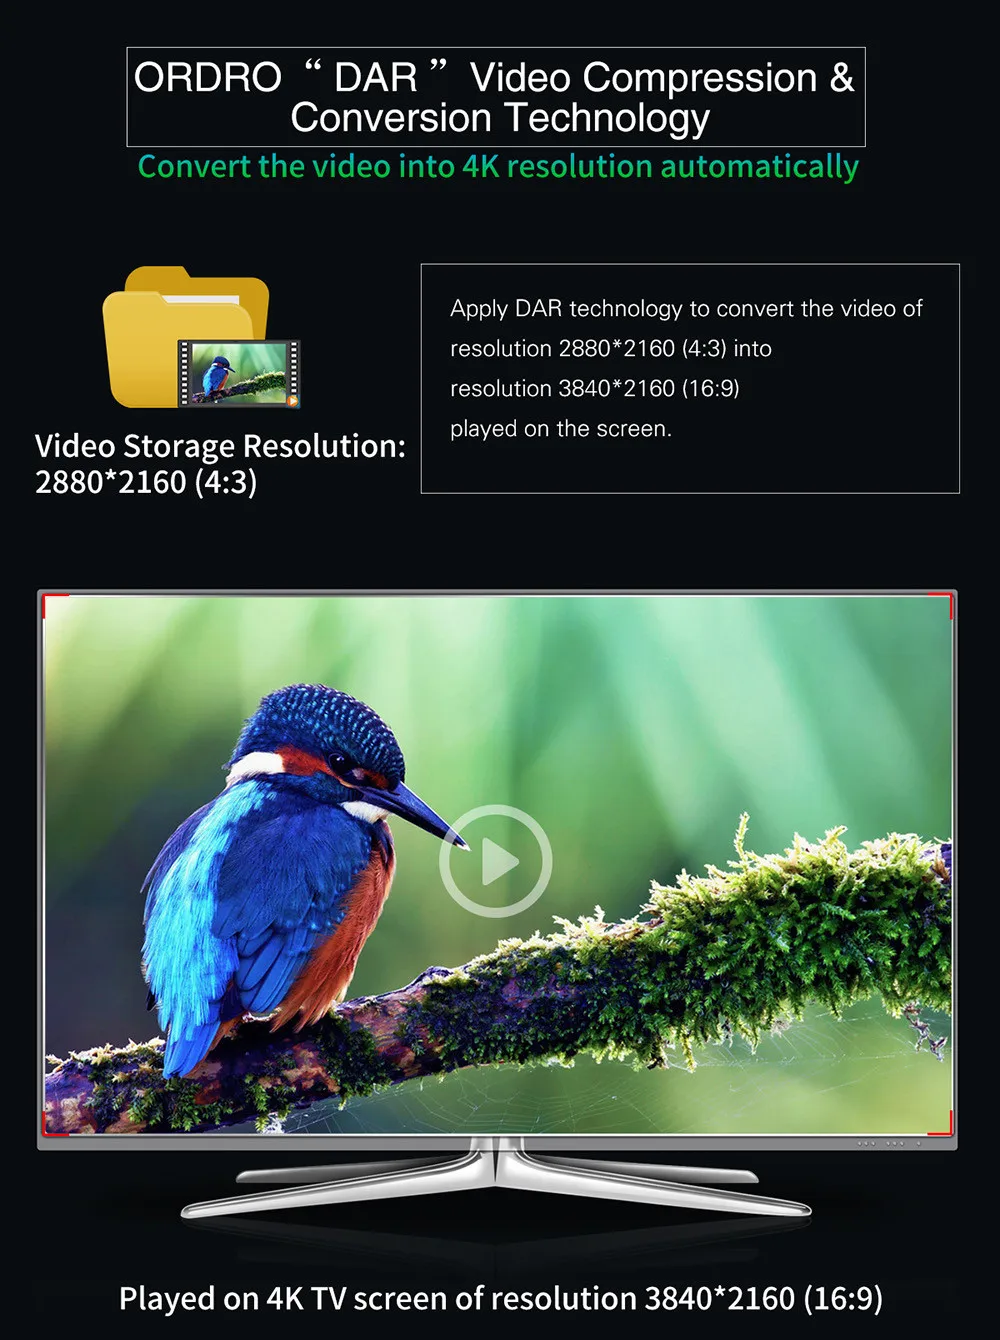 Ультра HD 60FPS видеокамера с Wi-Fi внешний микрофон широкоугольный объектив и бленда объектива инфракрасная камера ночного видения открытая ИК